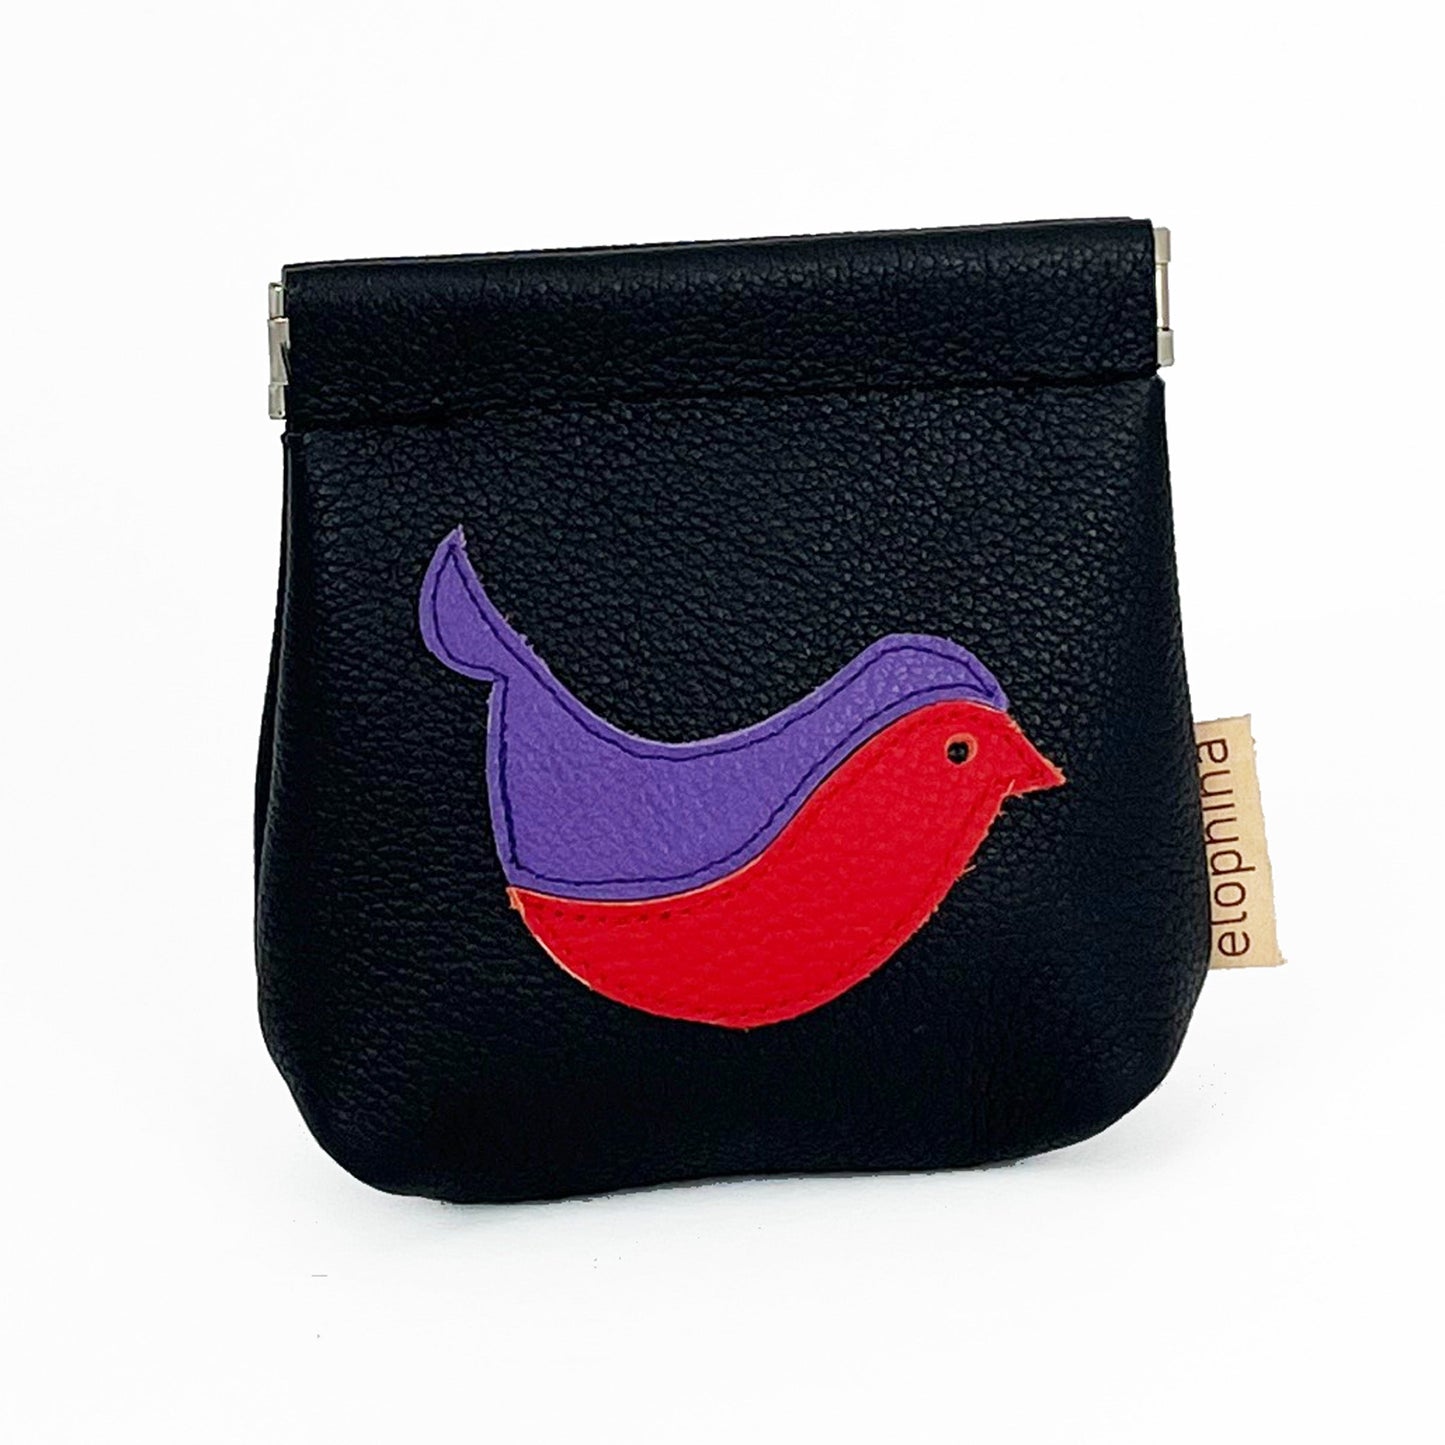 Bird coin purse orange/hot pink